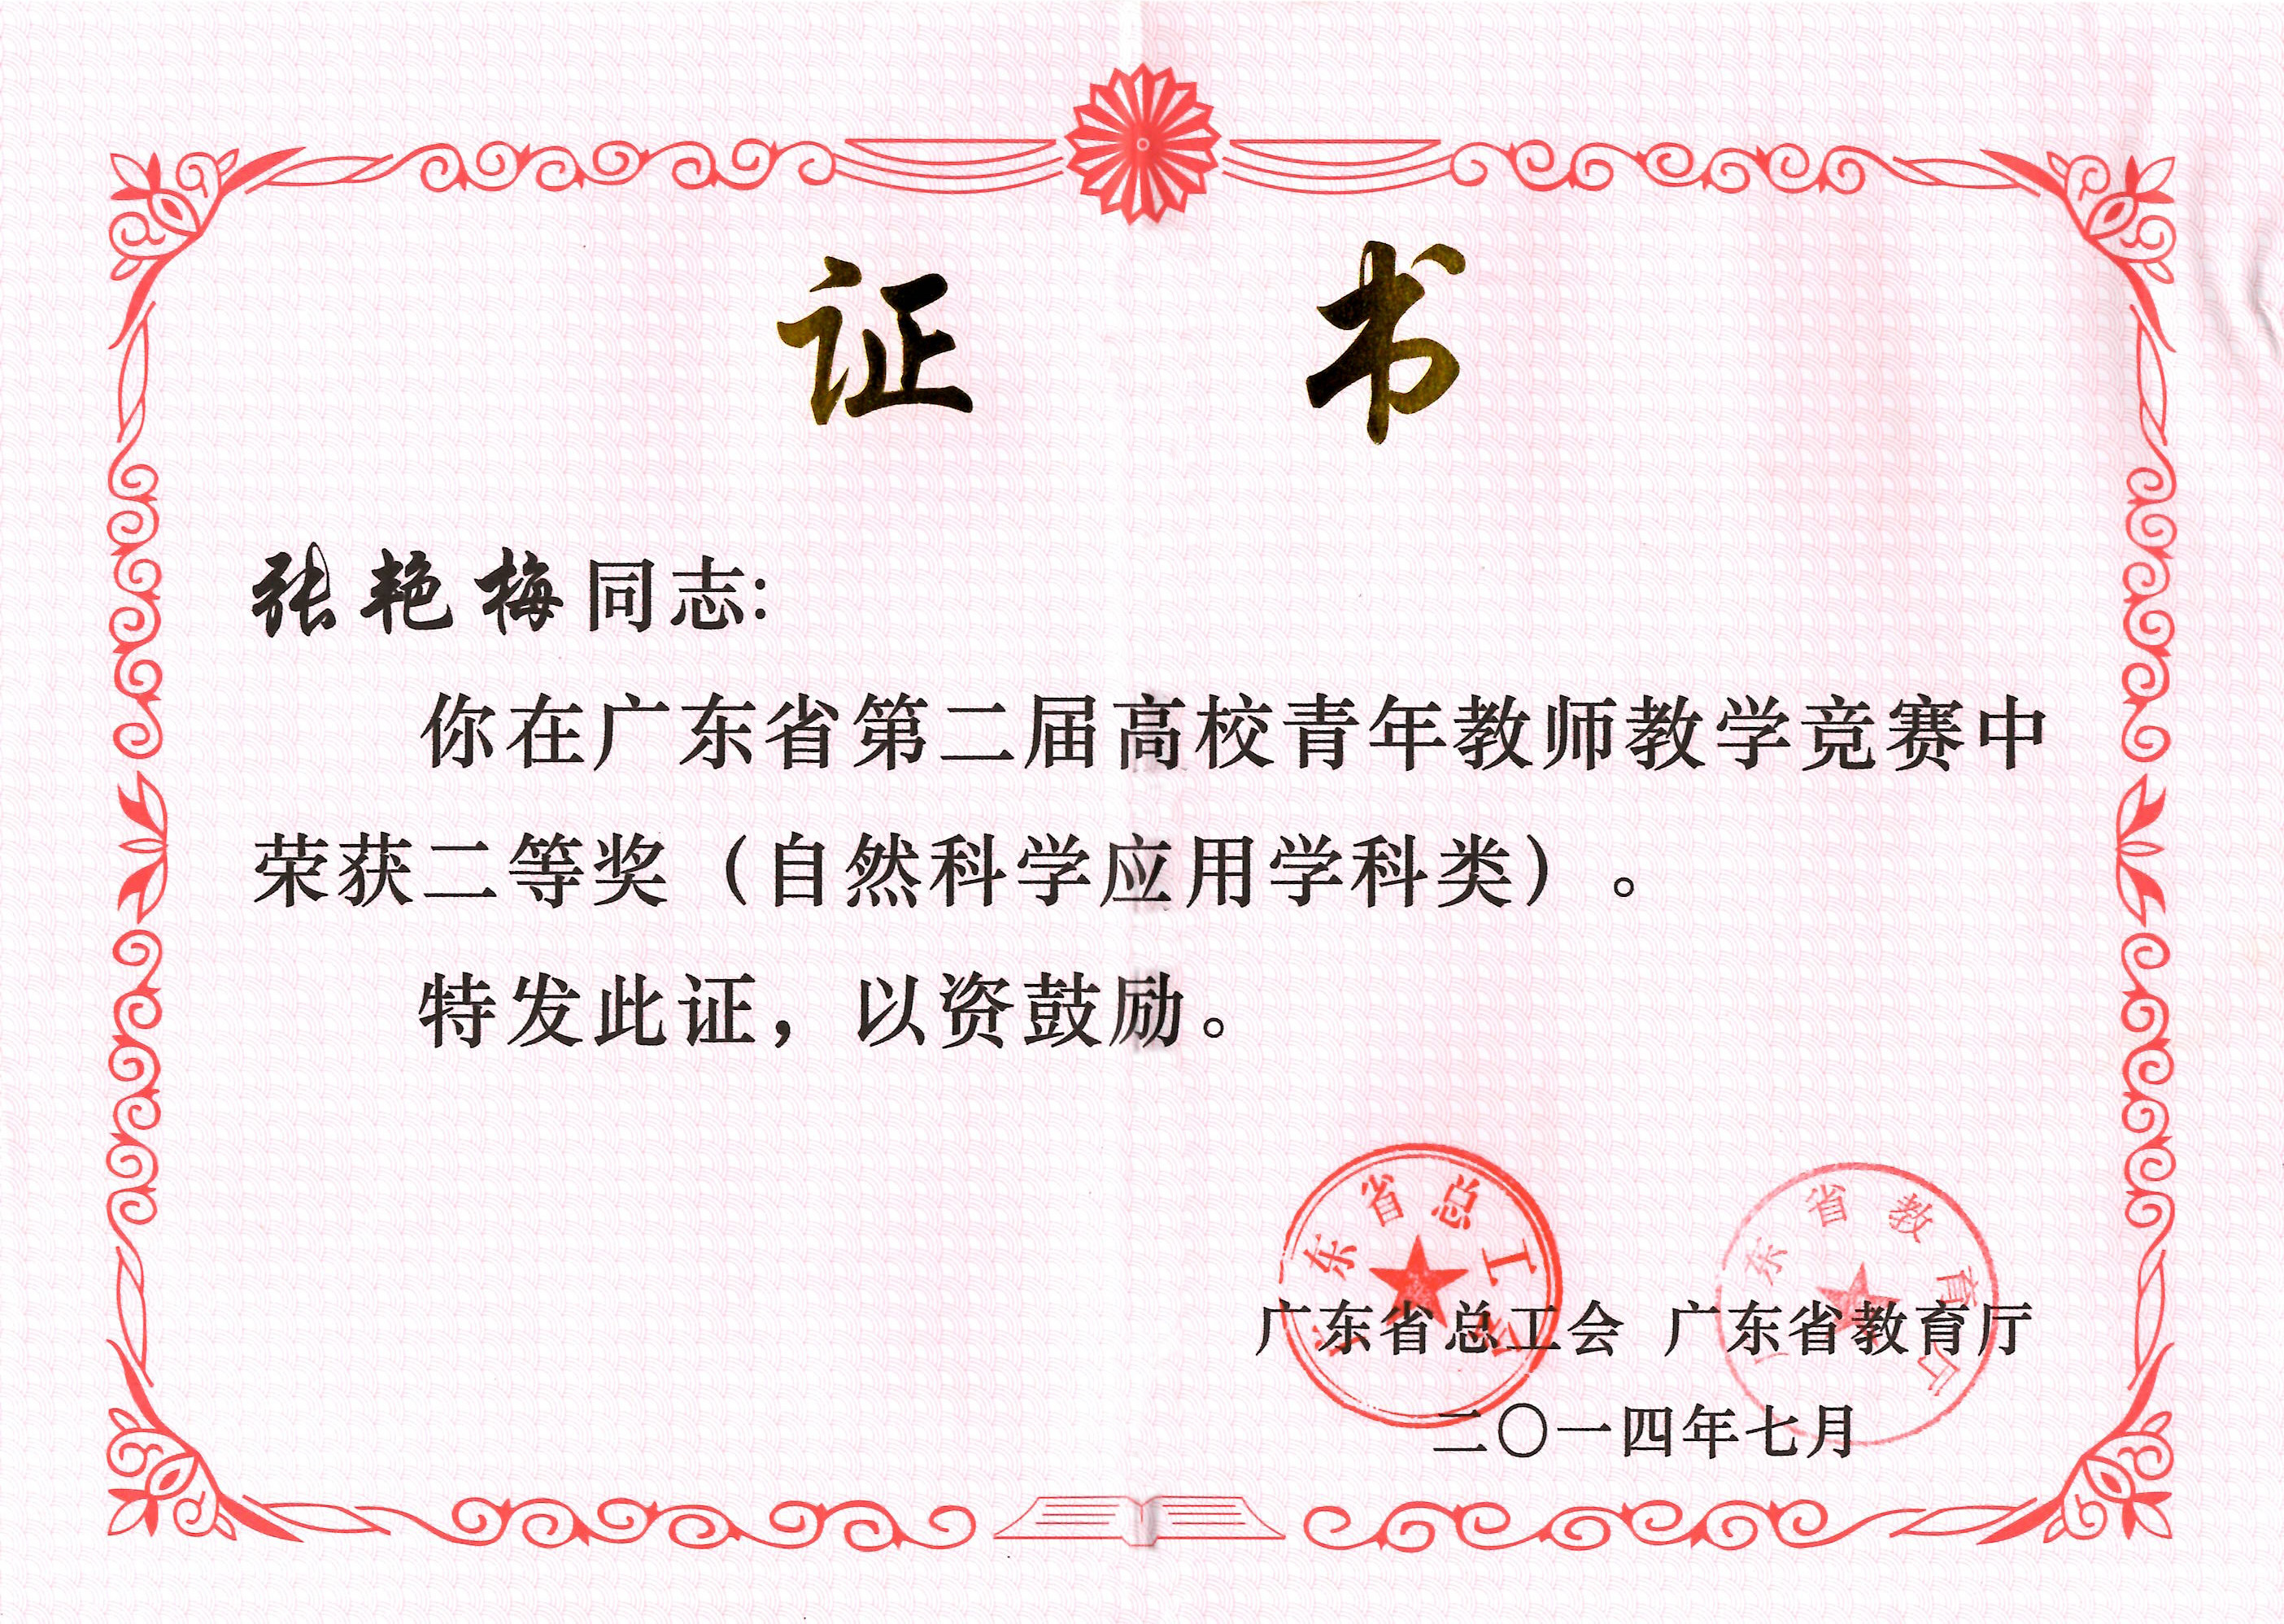 201407广东省青教赛张获奖证书-001.JPG